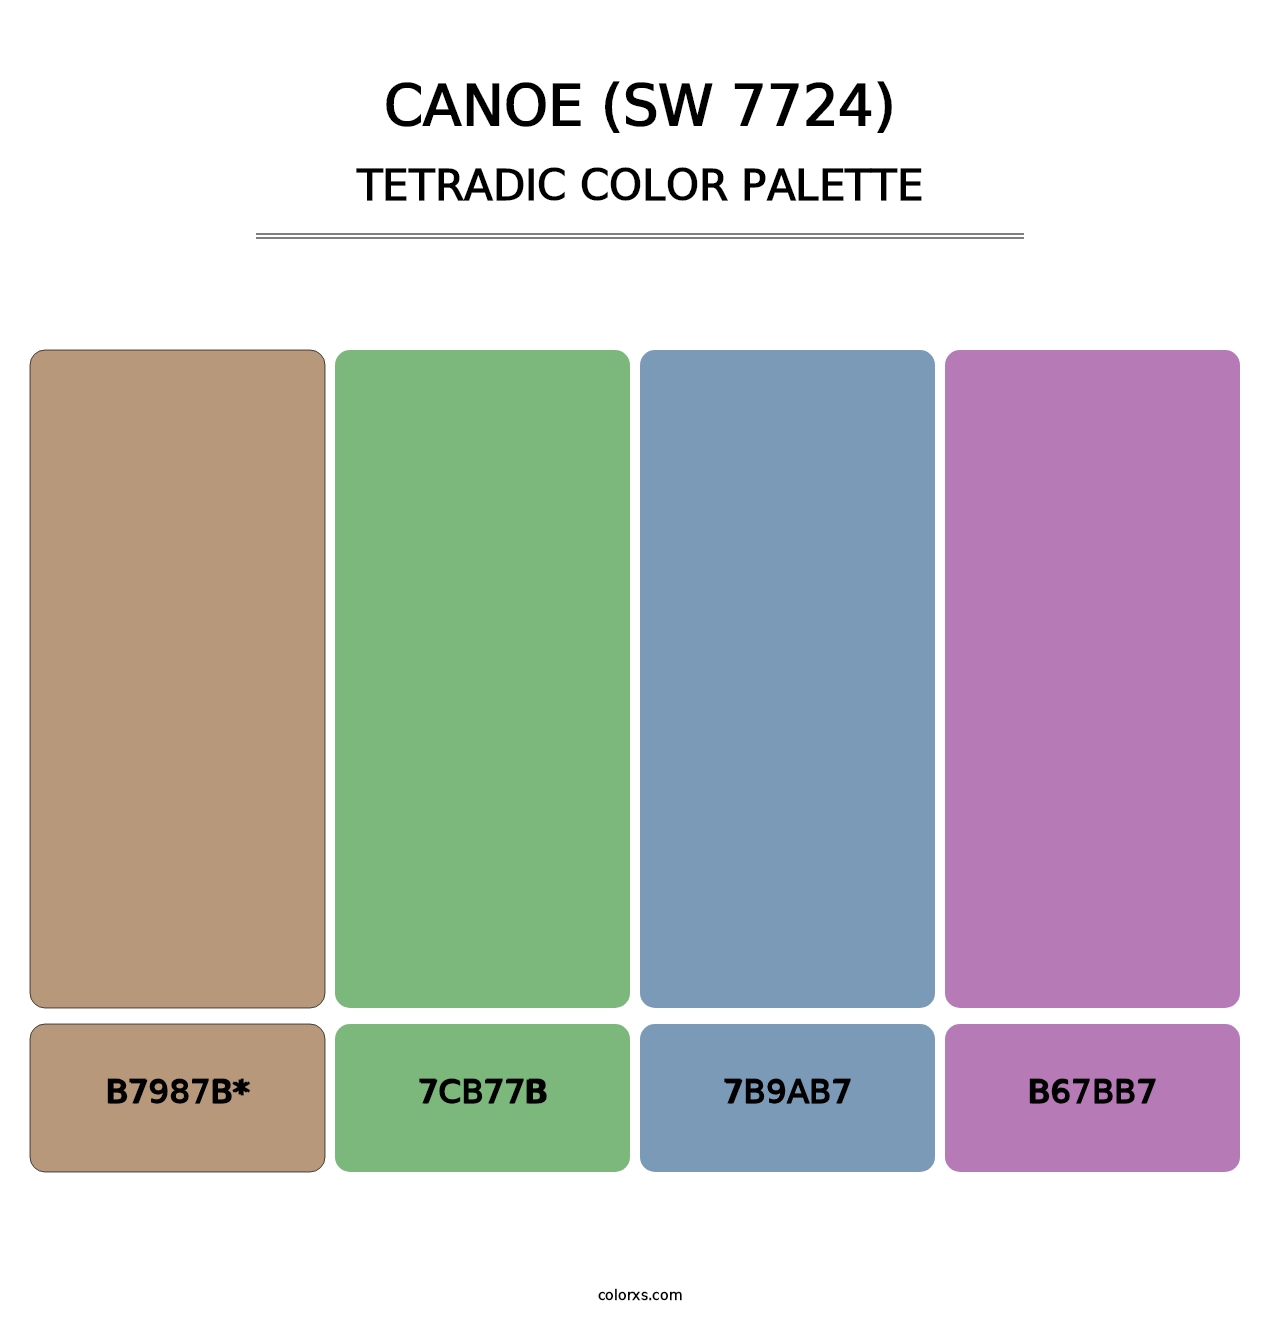 Canoe (SW 7724) - Tetradic Color Palette